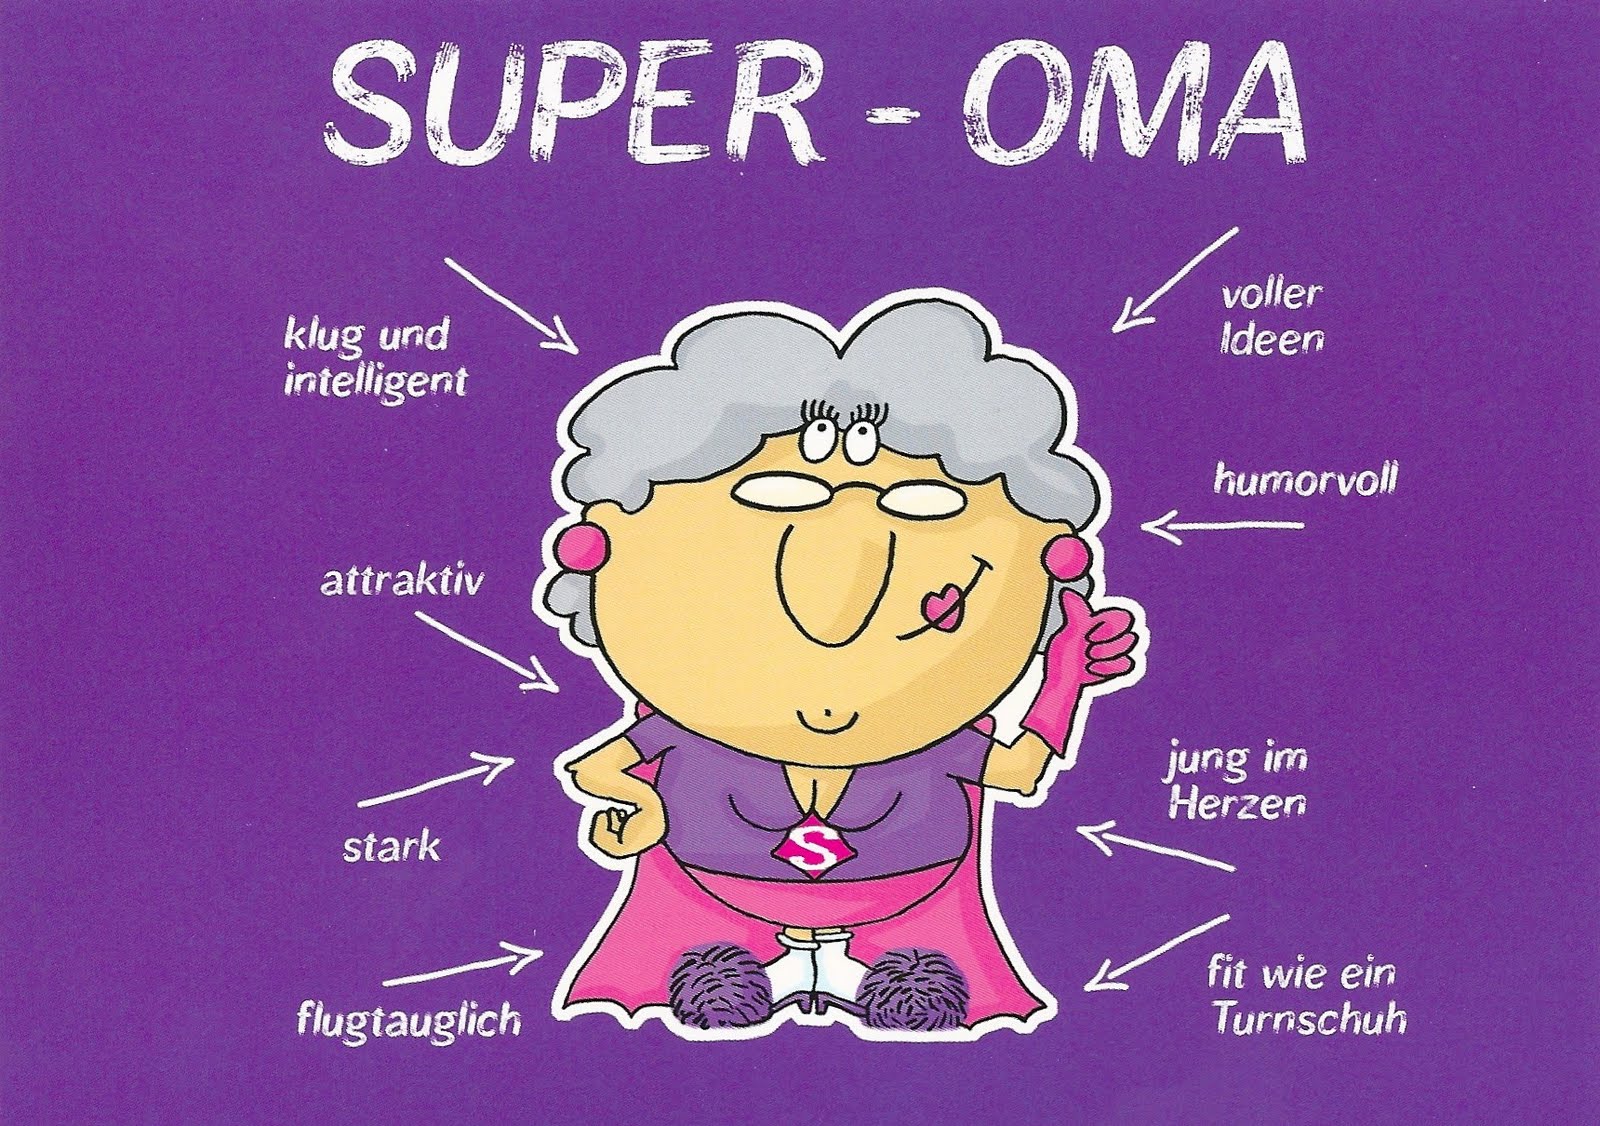 Super - Oma (Super Grandma) Super - Opa (Super Grandpa) Klug und intelligen...